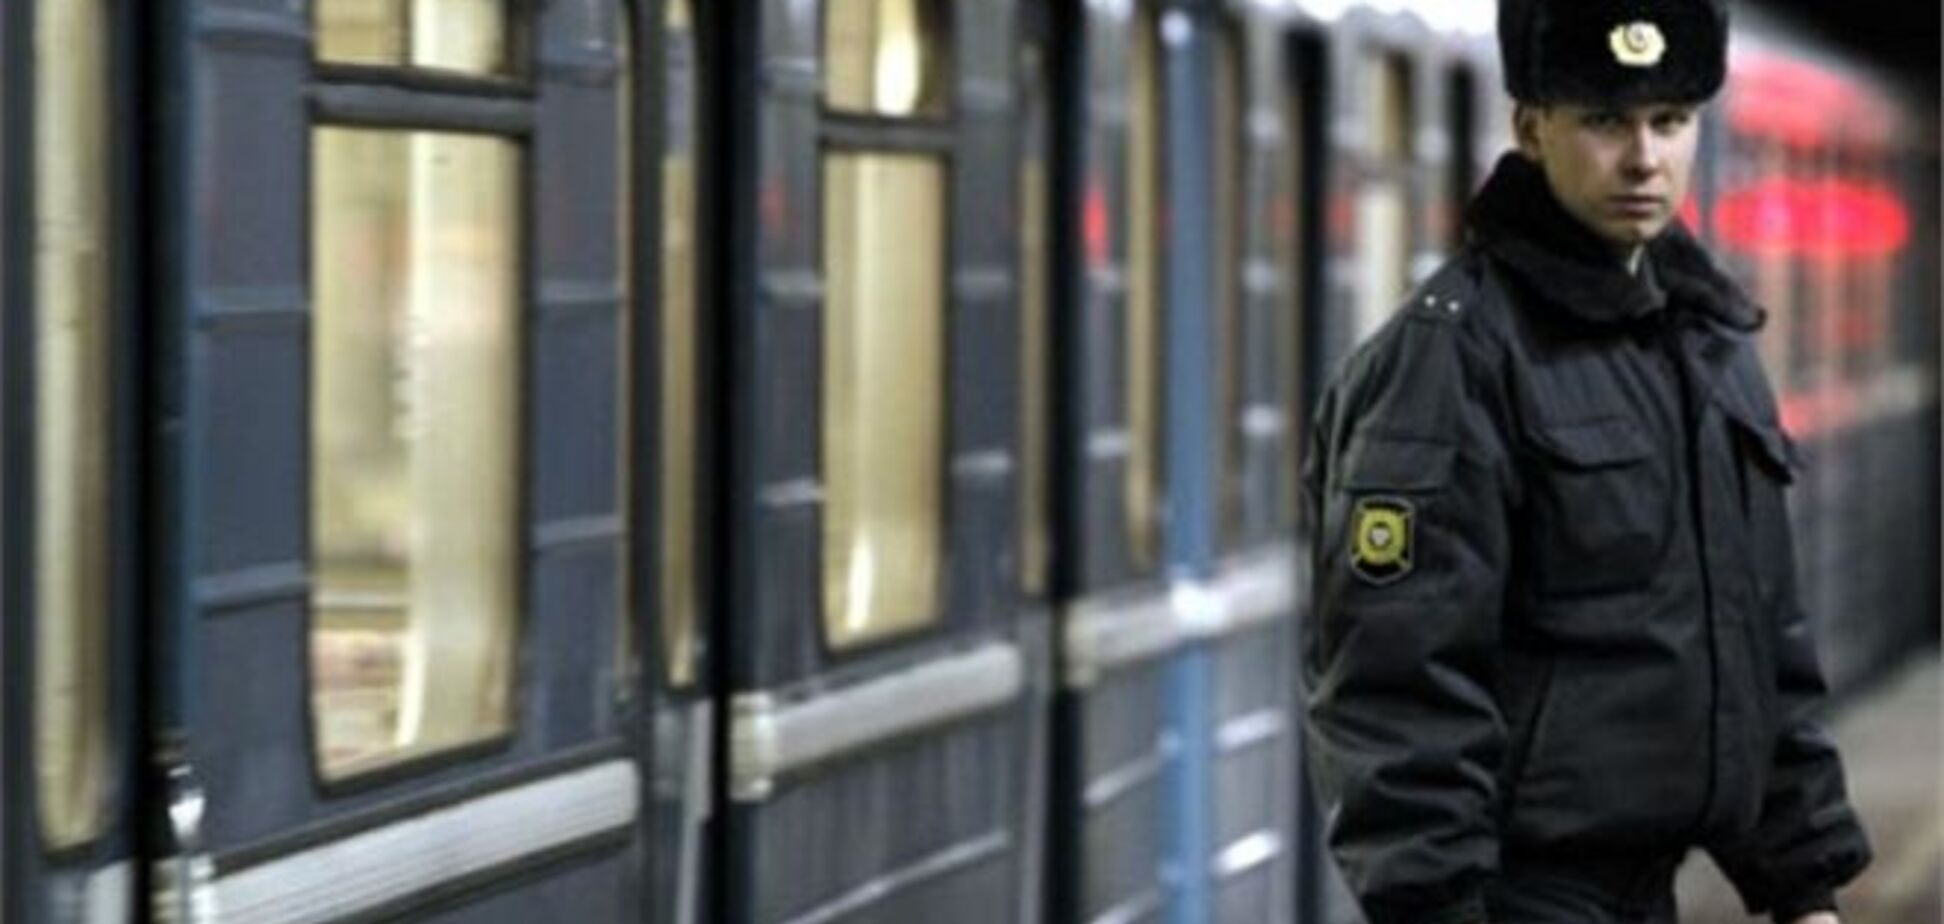 ЧП в московском метро: человек упал под поезд